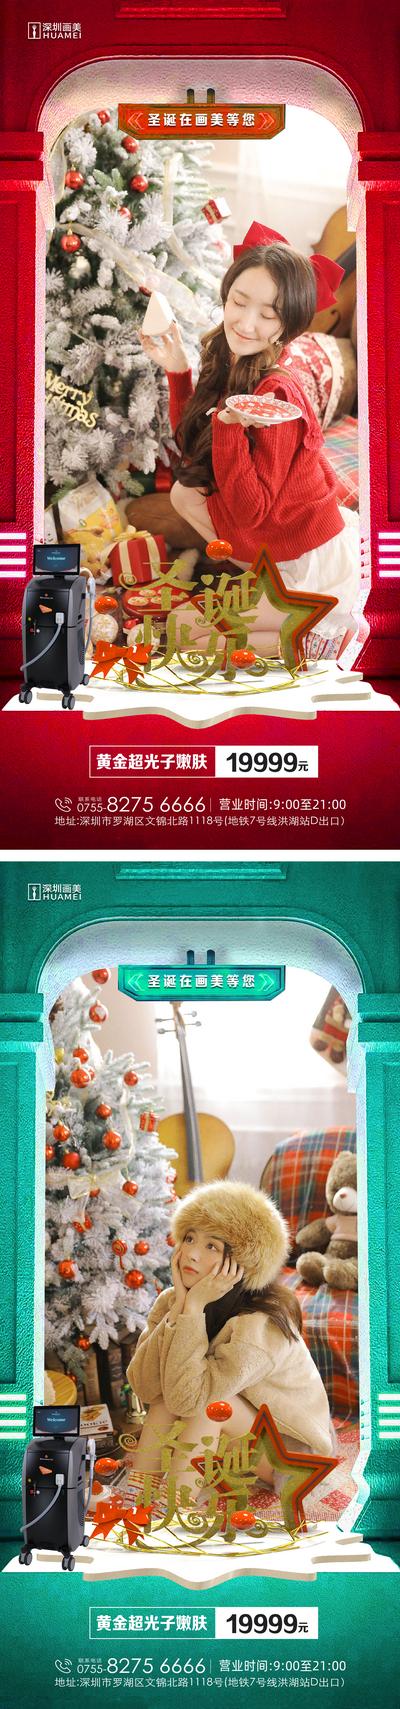 【南门网】广告 海报 医美 圣诞节 人物 模特 场景 创意 立体 系列